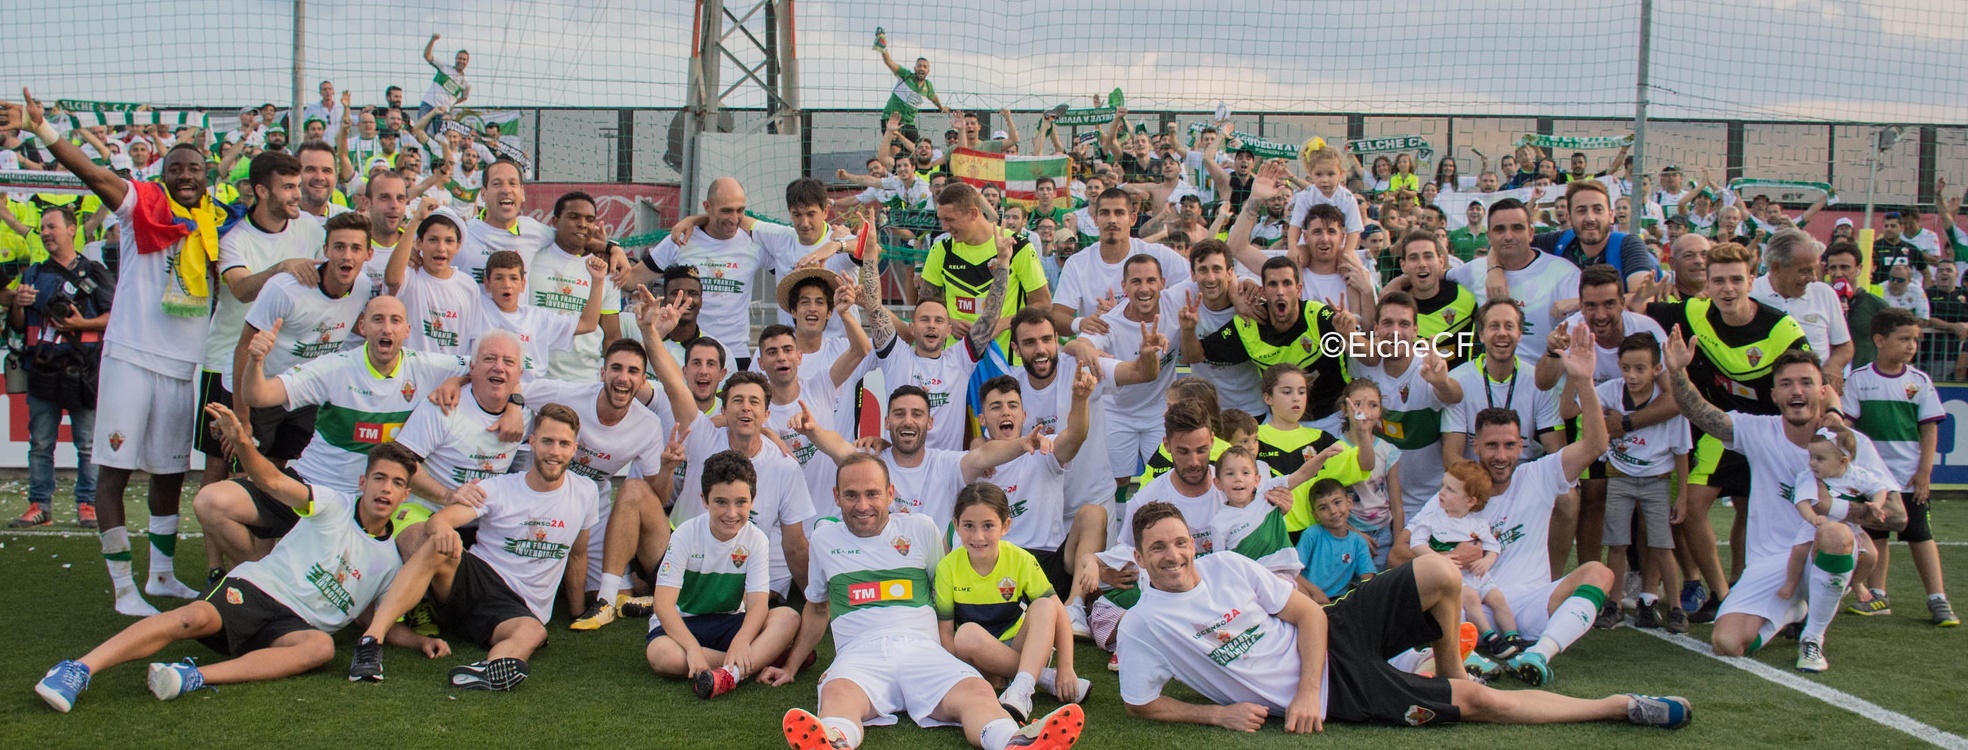 Los jugadores del Elche CF celebran el ascenso en Villarreal / Sonia Arcos - Elche CF